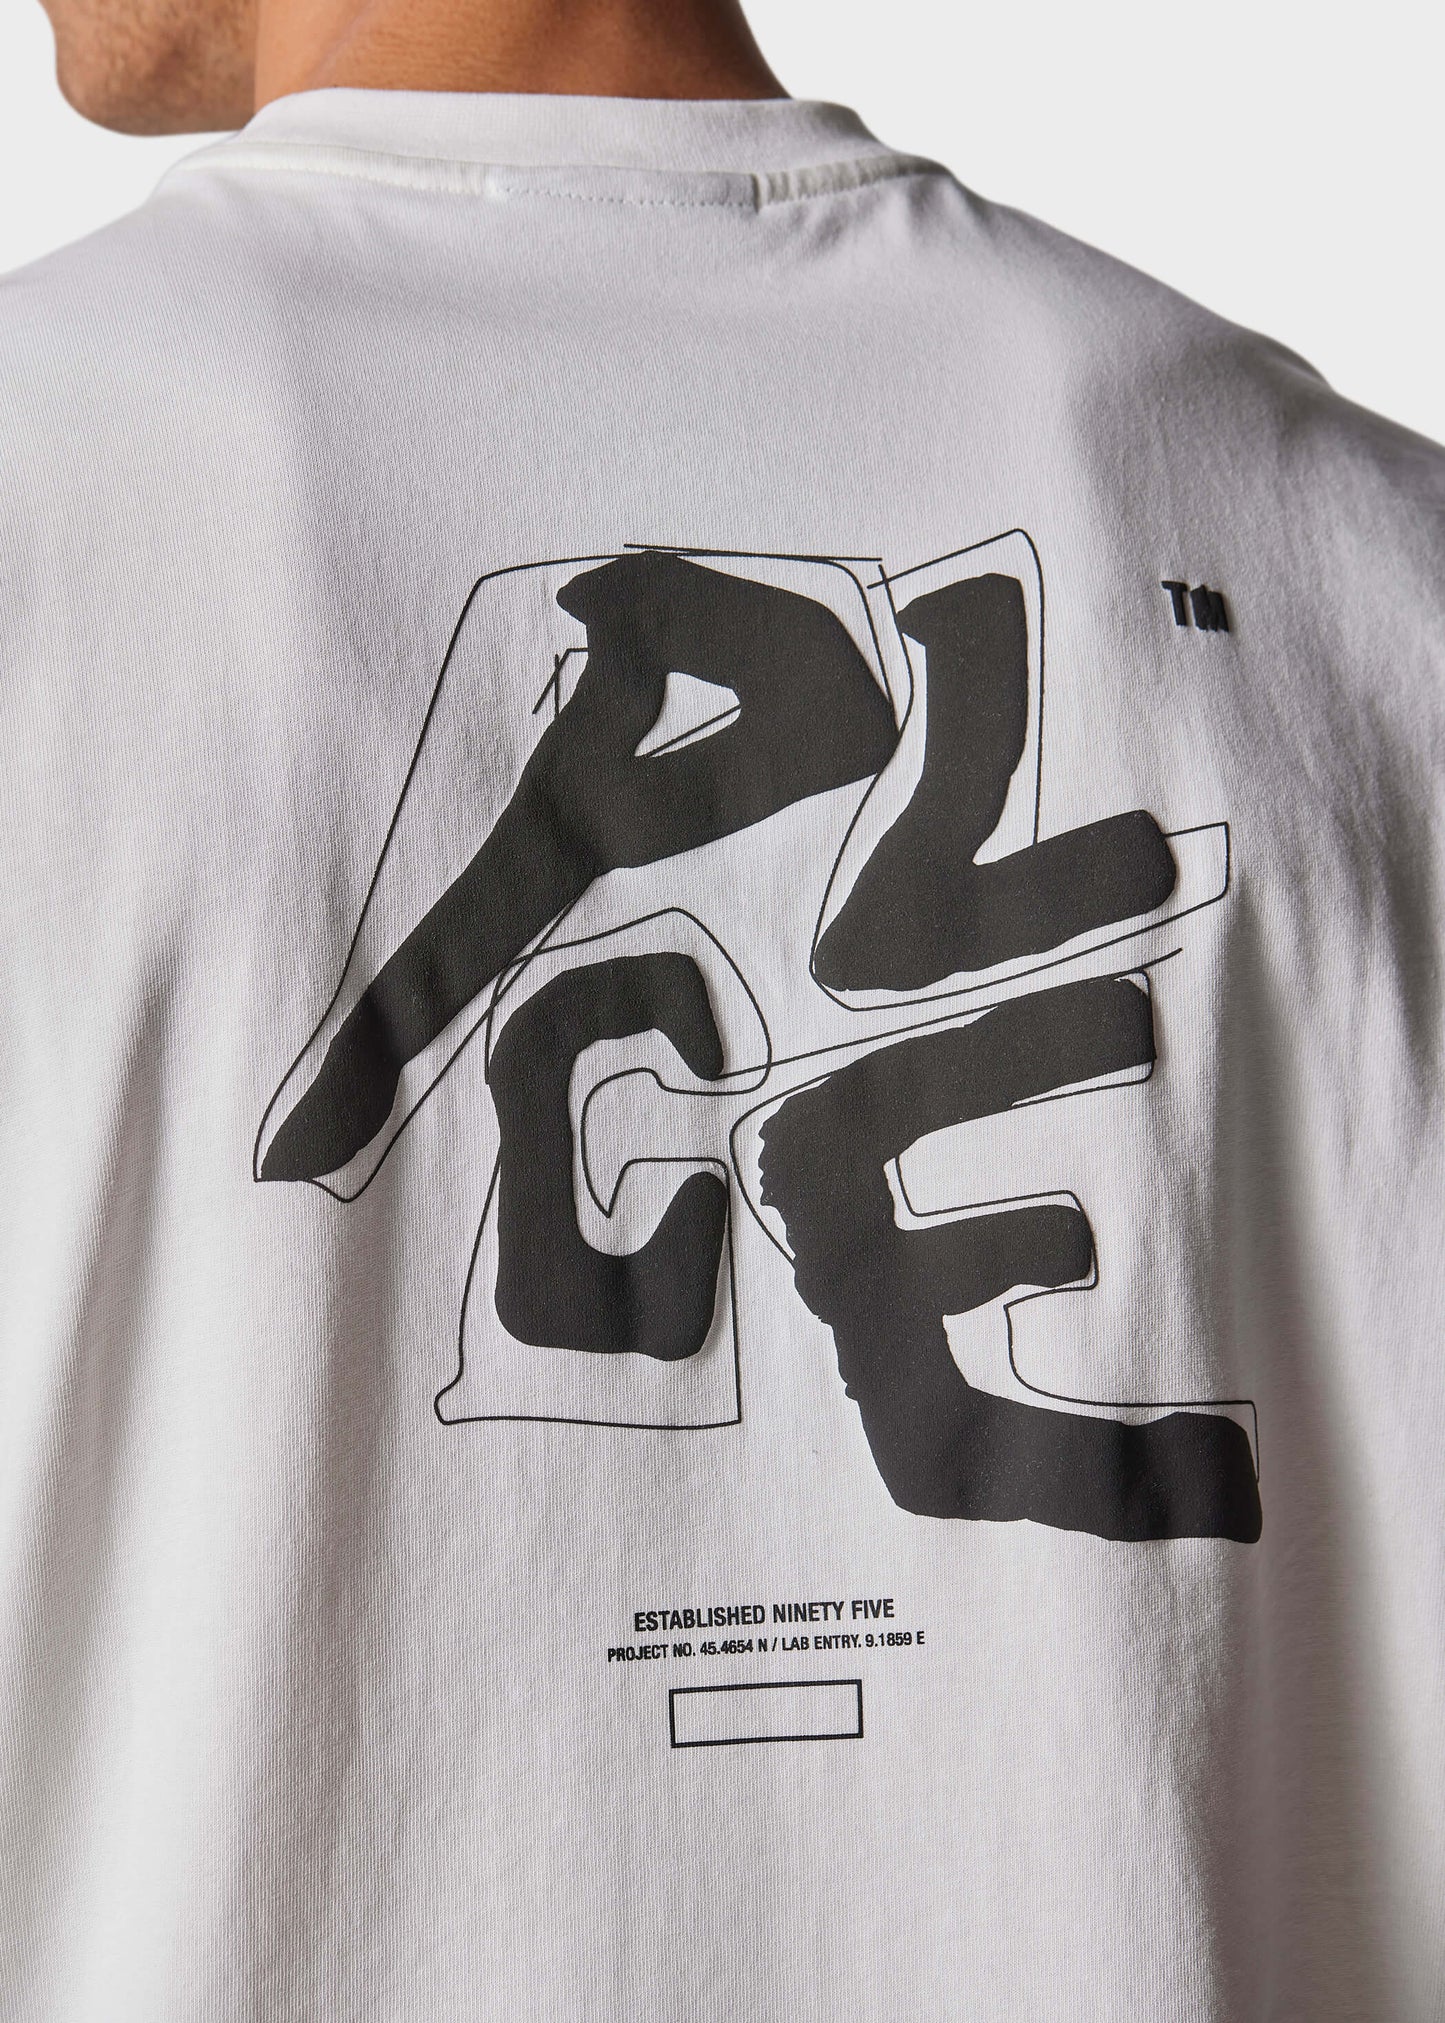 Argo Bone White T-Shirt